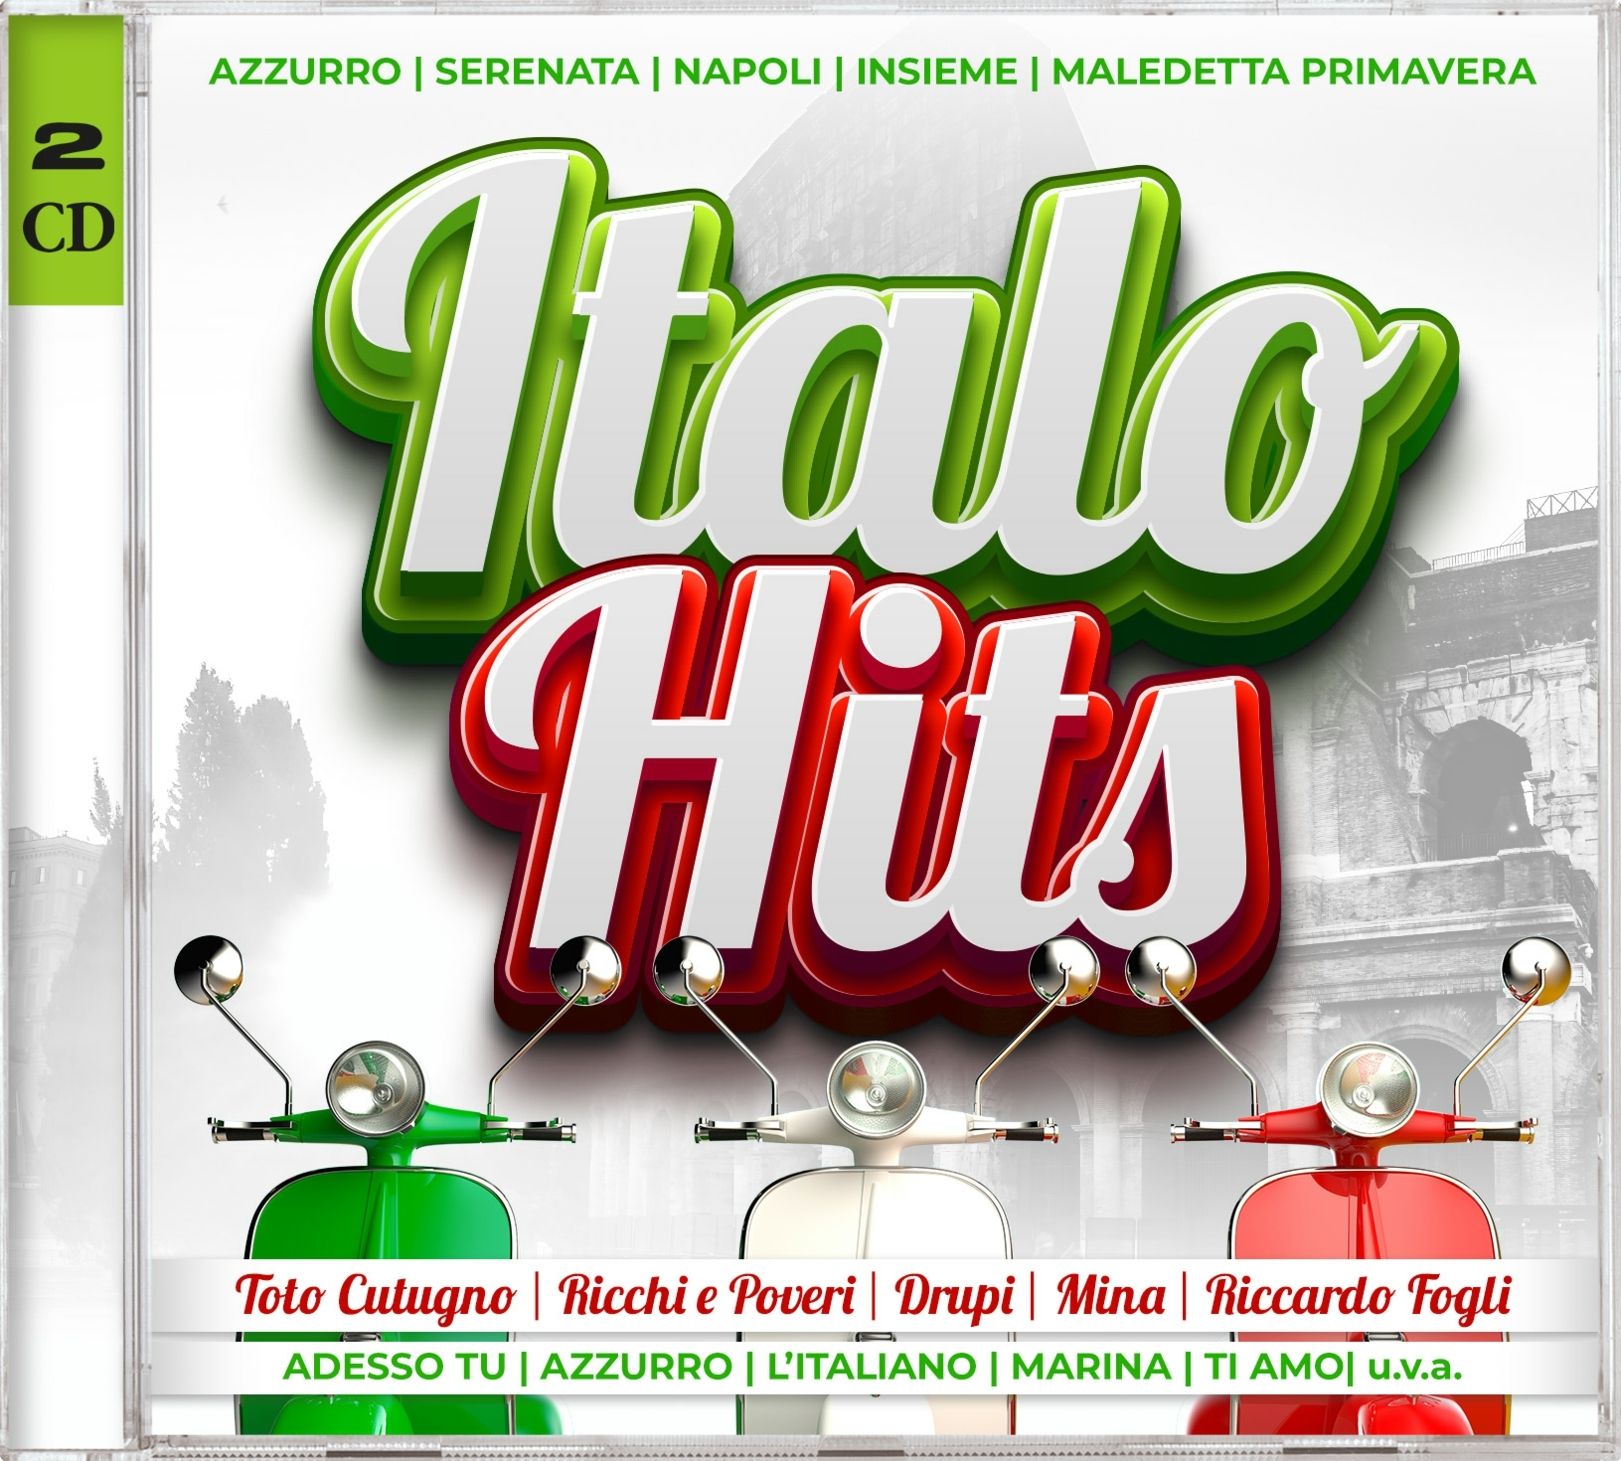 Italo　bei　CD　Hits　CDs　Interpreten　von　Diverse